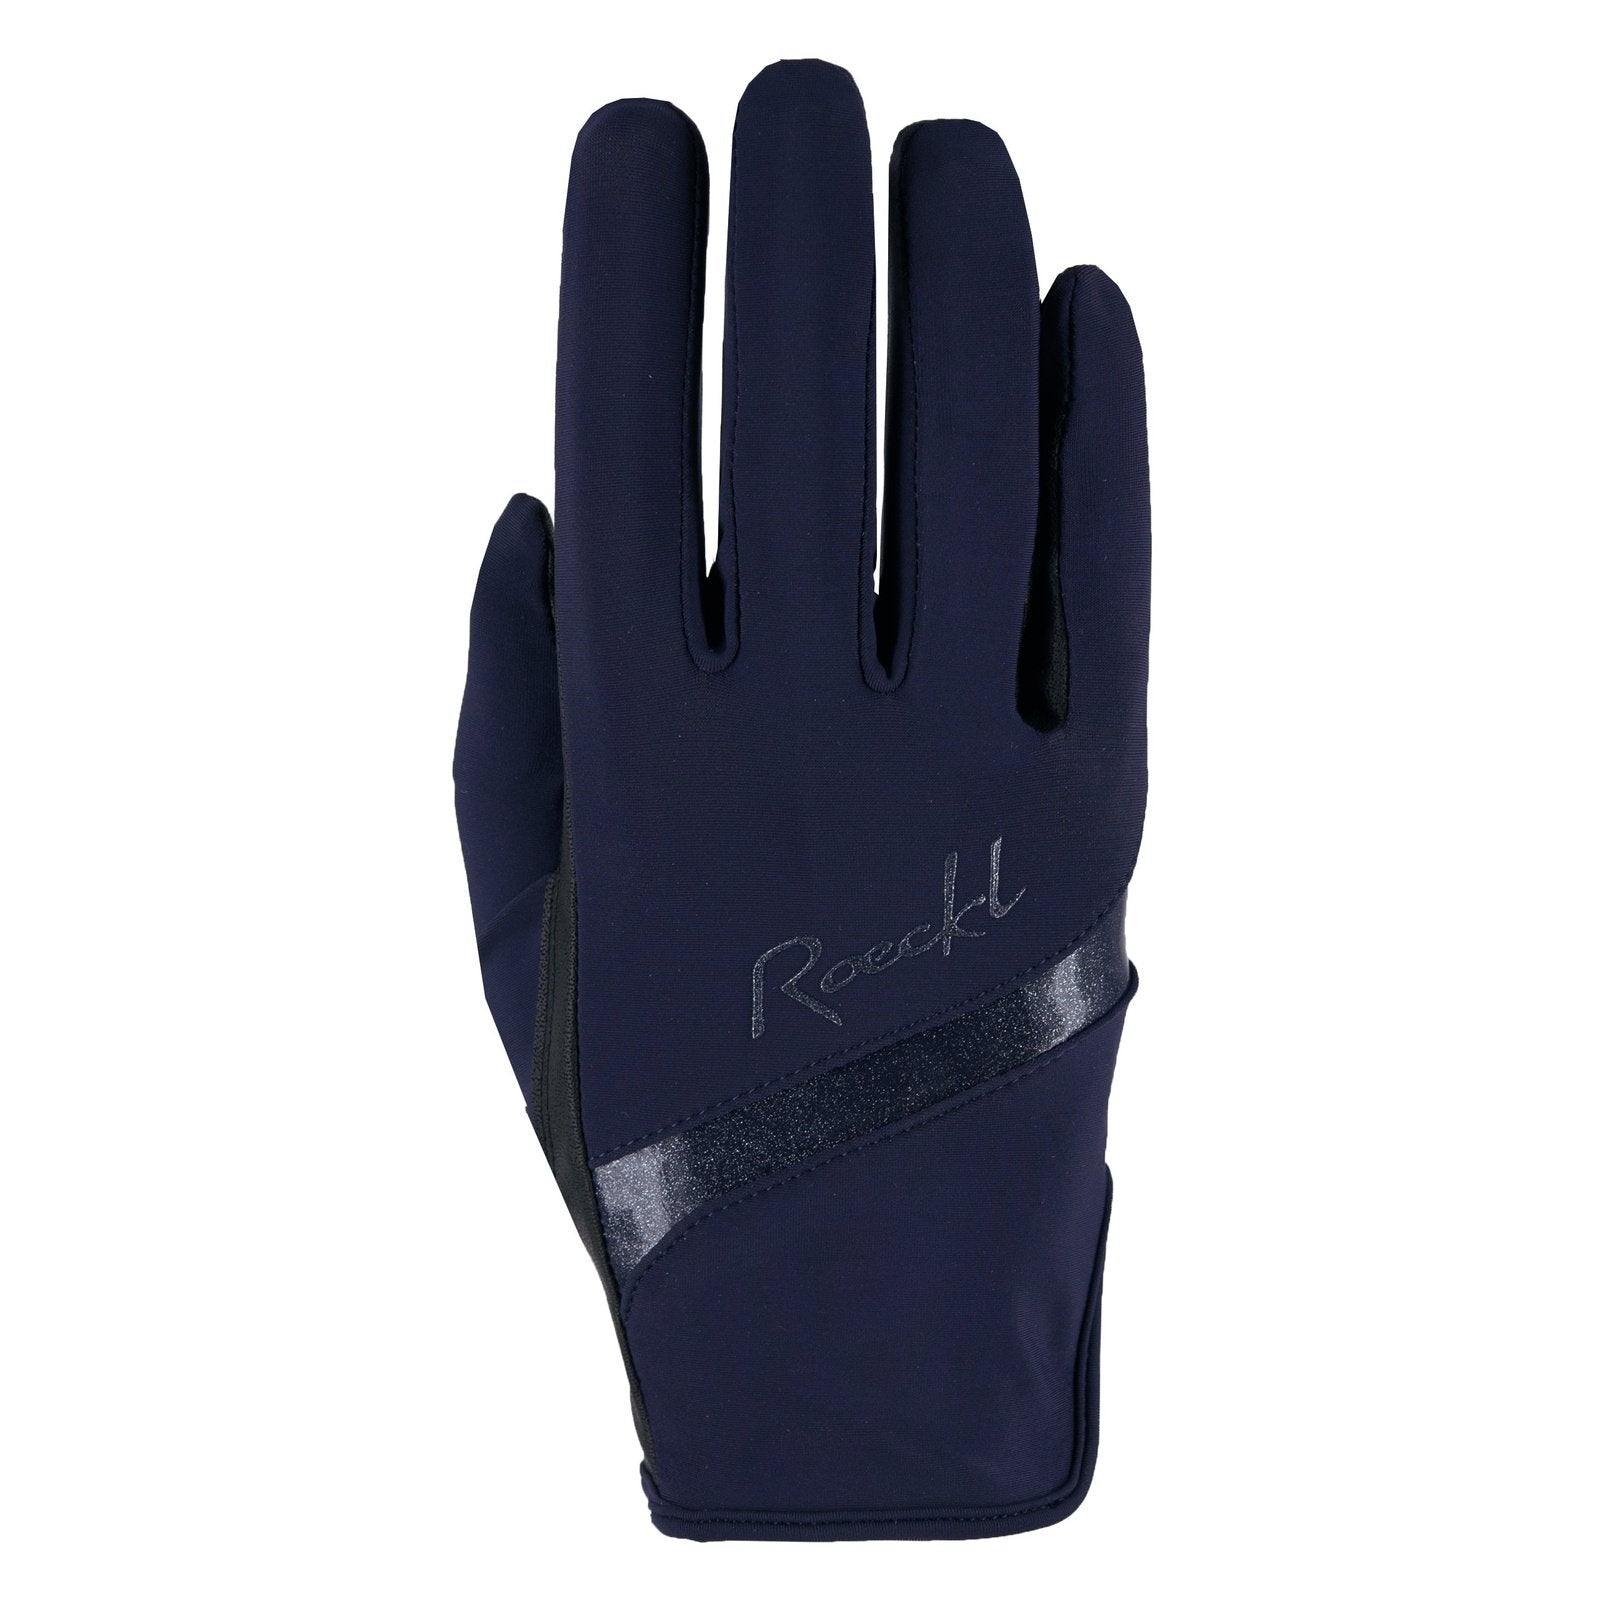 Roeckl Handschuhe Lorraine bei SP-Reitsport